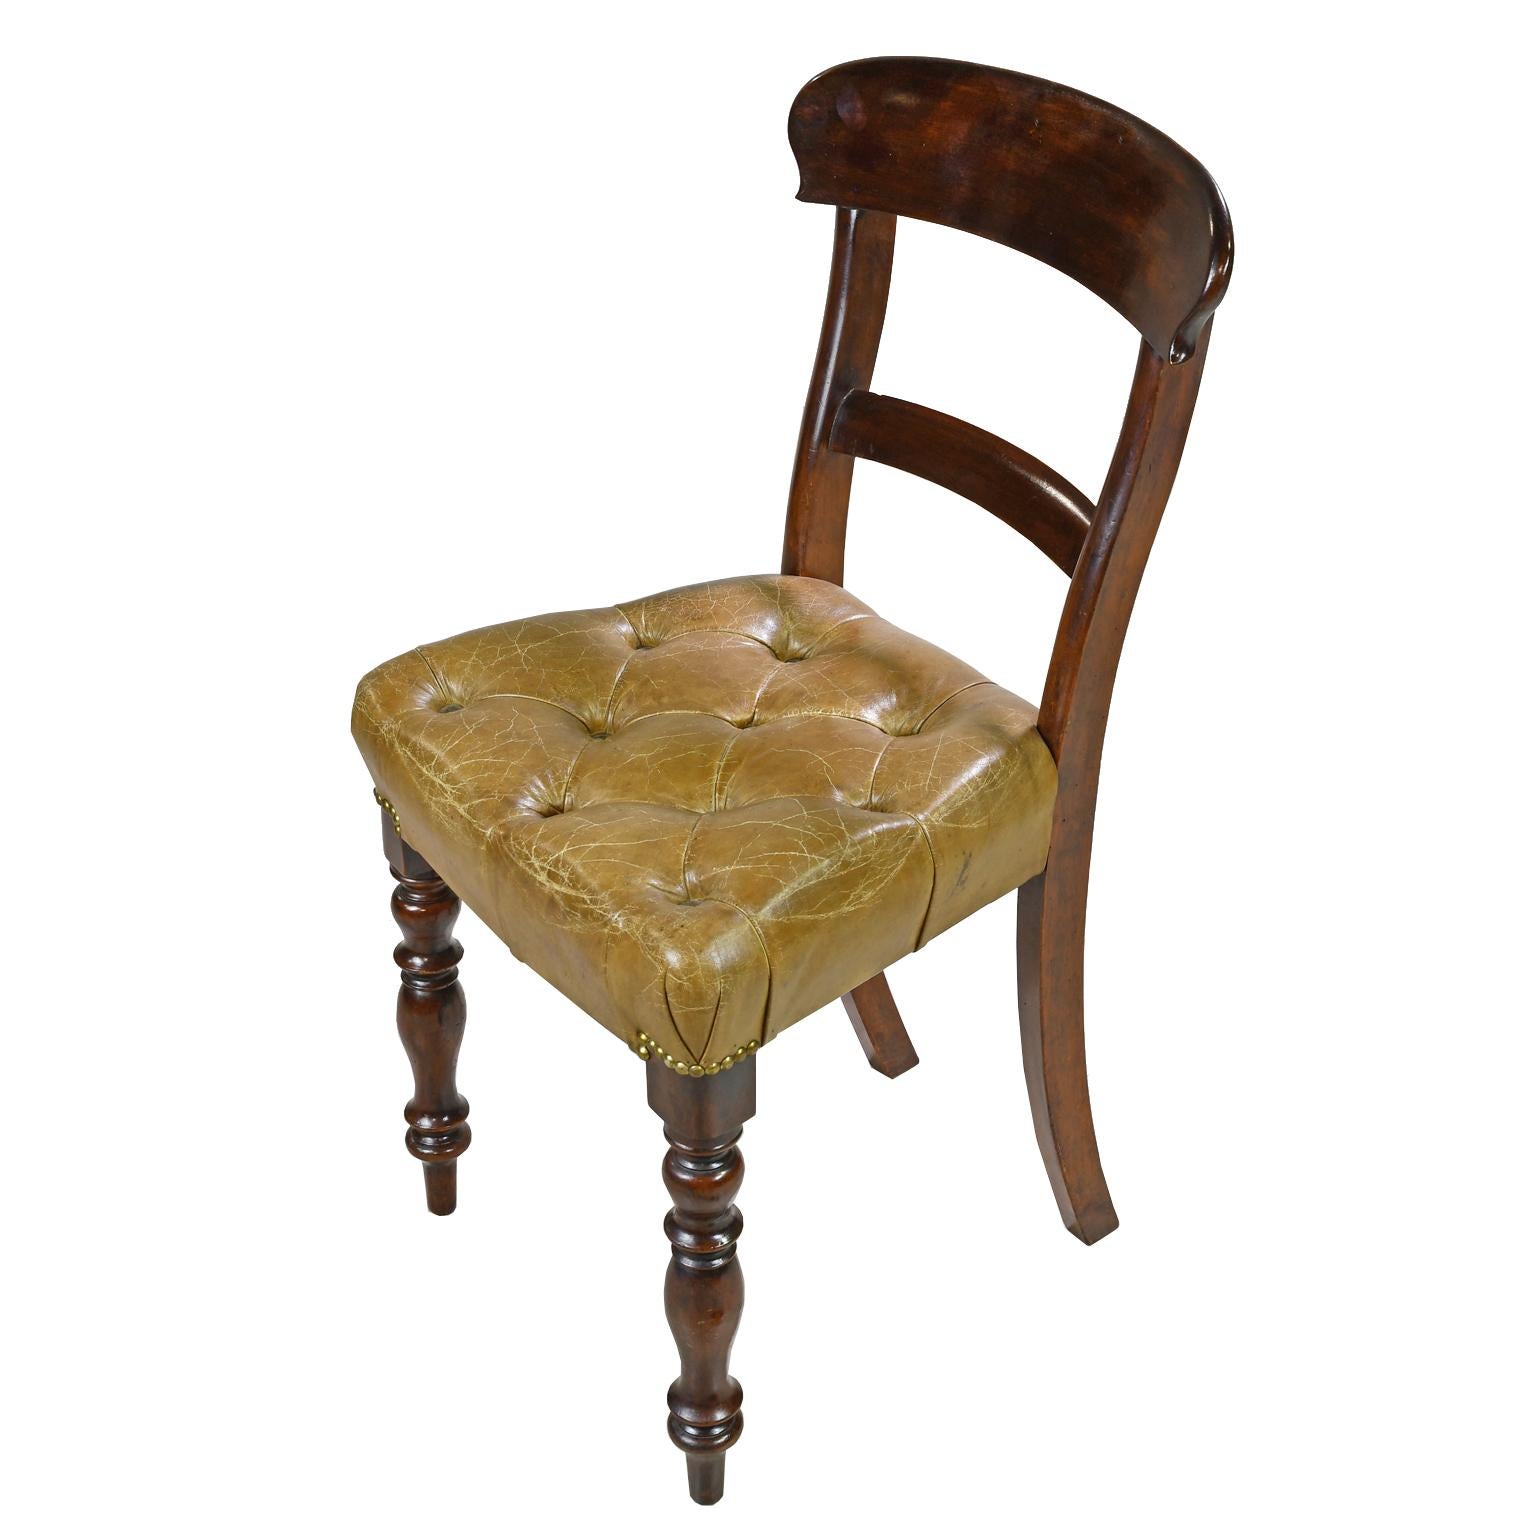 Ein frühviktorianischer Beistellstuhl aus Mahagoni mit geschwungener oberer Schiene, der auf gedrechselten Vorder- und Hinterbeinen steht. Sitz gepolstert mit getuftetem, beige/kamel-farbenem Leder mit Messingnagelköpfen, England, um 1840. Hinweis: